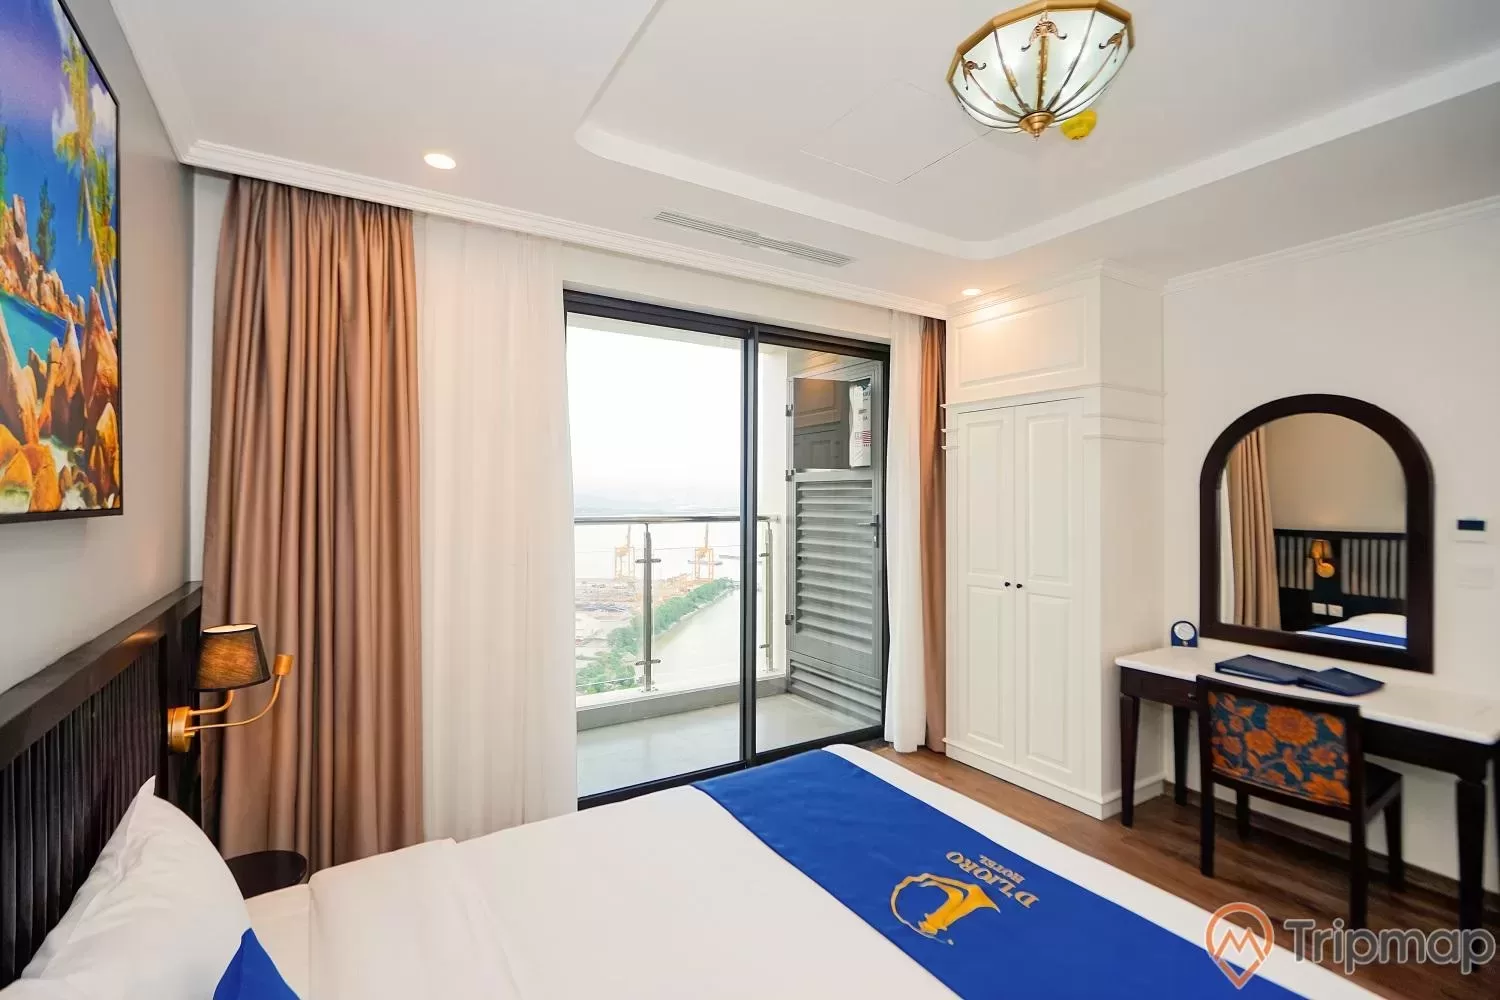 D'Lioro Hotel & Resort là biểu tượng của sự thanh lịch và đẳng cấp